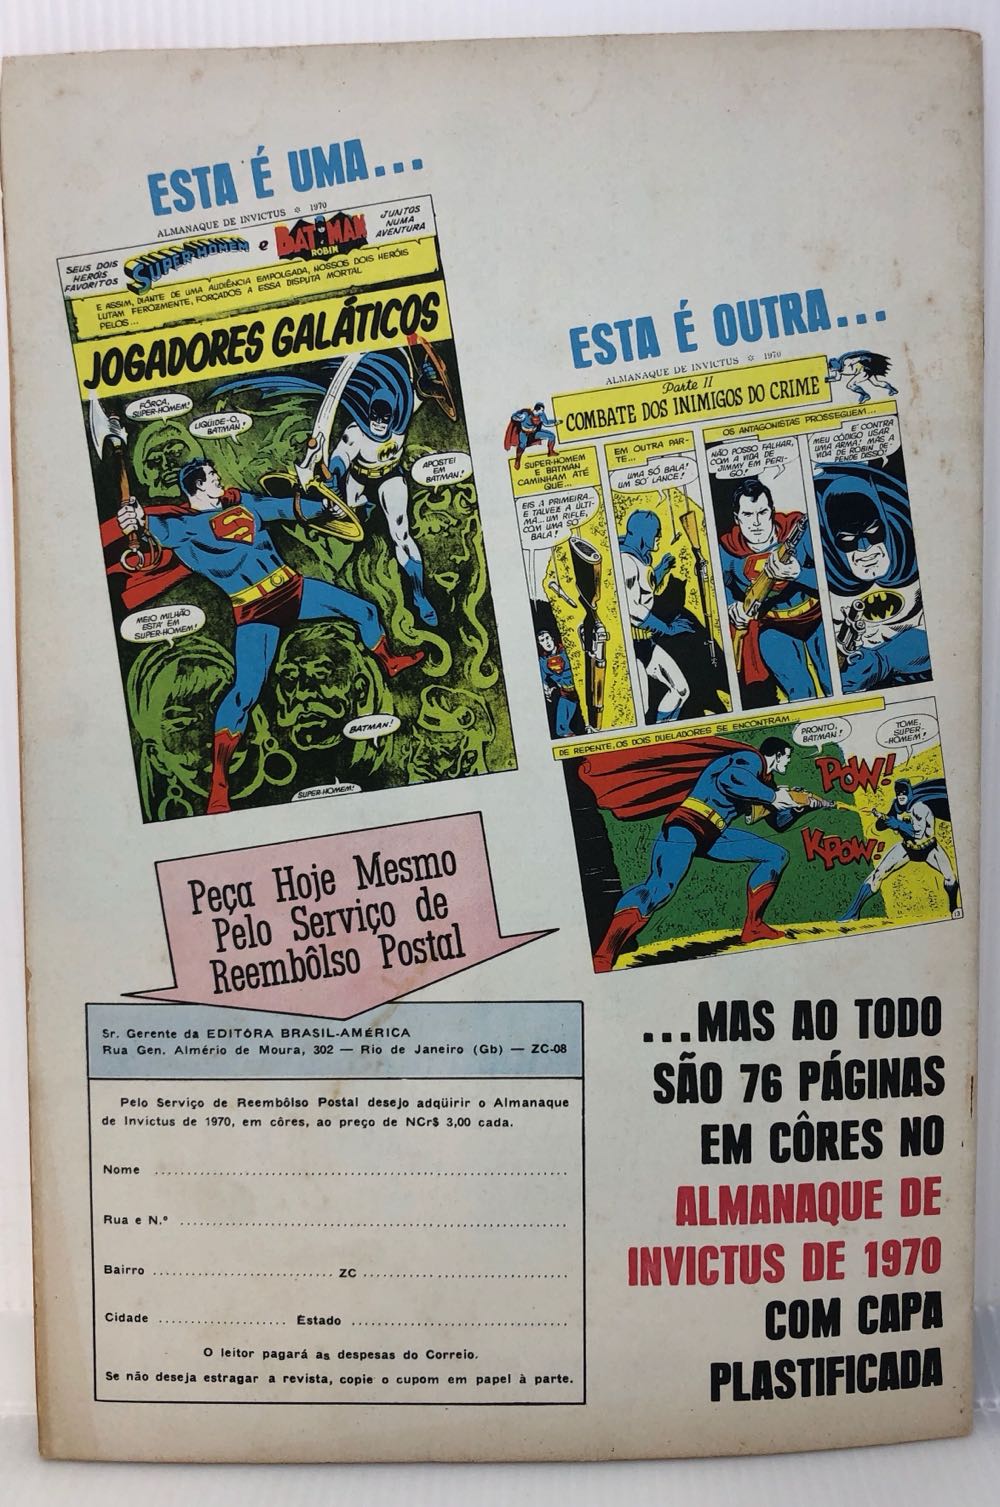 Dois Super-heróis Homem de Ferro e Capitão América   (November) magazine collectible - Main Image 2